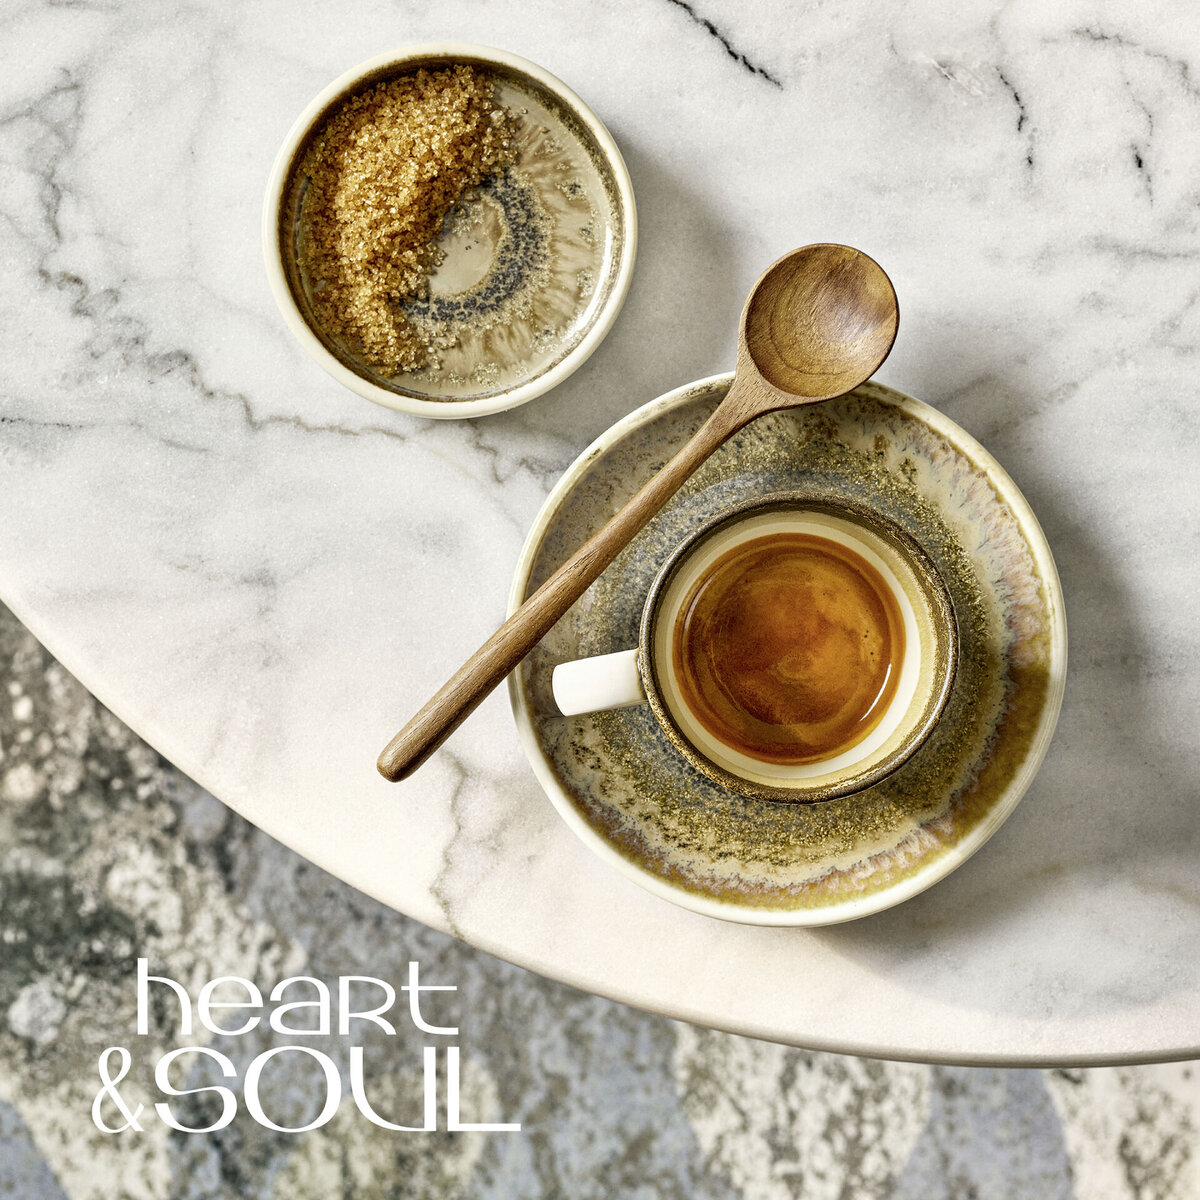 "Heart & Soul" Cumin Tasse untere Espresso (1)